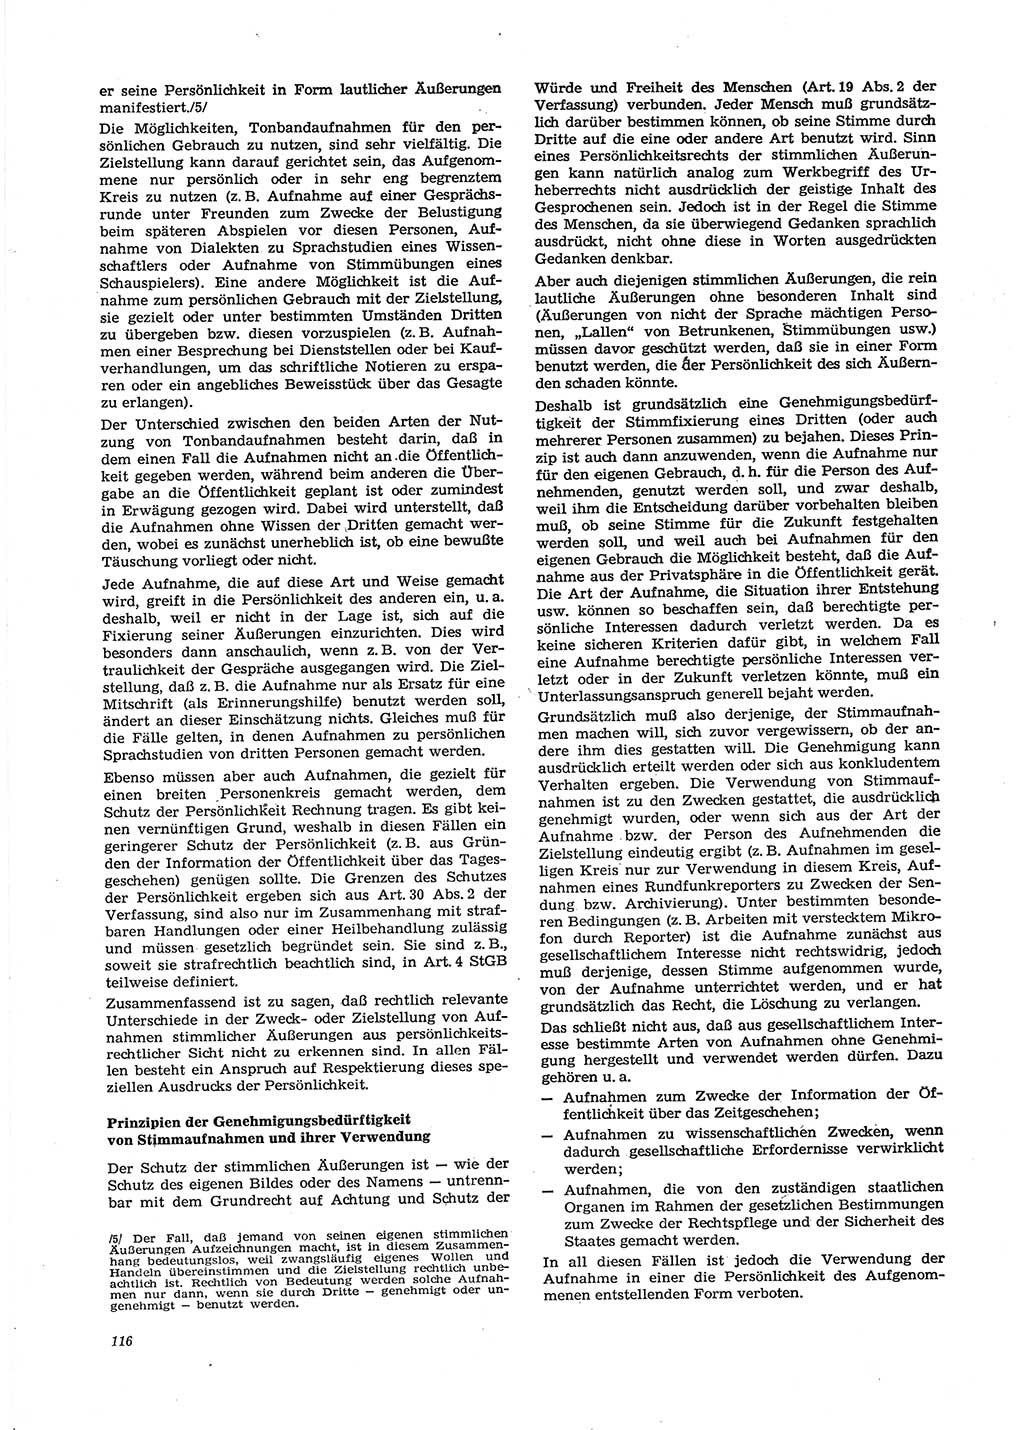 Neue Justiz (NJ), Zeitschrift für Recht und Rechtswissenschaft [Deutsche Demokratische Republik (DDR)], 29. Jahrgang 1975, Seite 116 (NJ DDR 1975, S. 116)